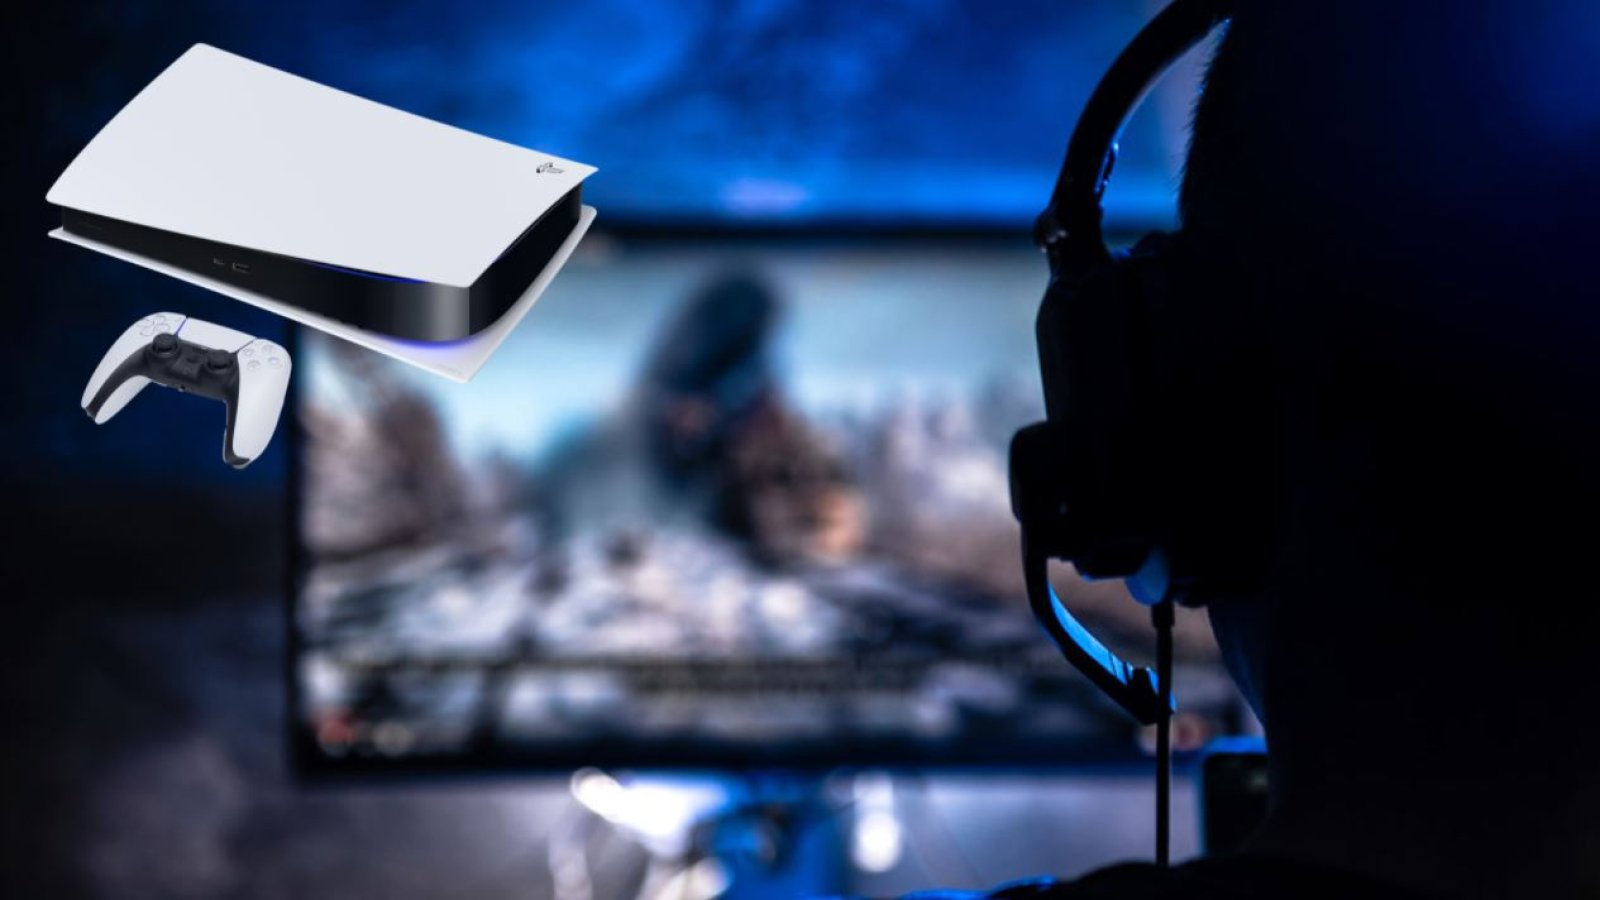 PS5 mit UltrawideSupport? TVHersteller verspricht Monitore Futurezone